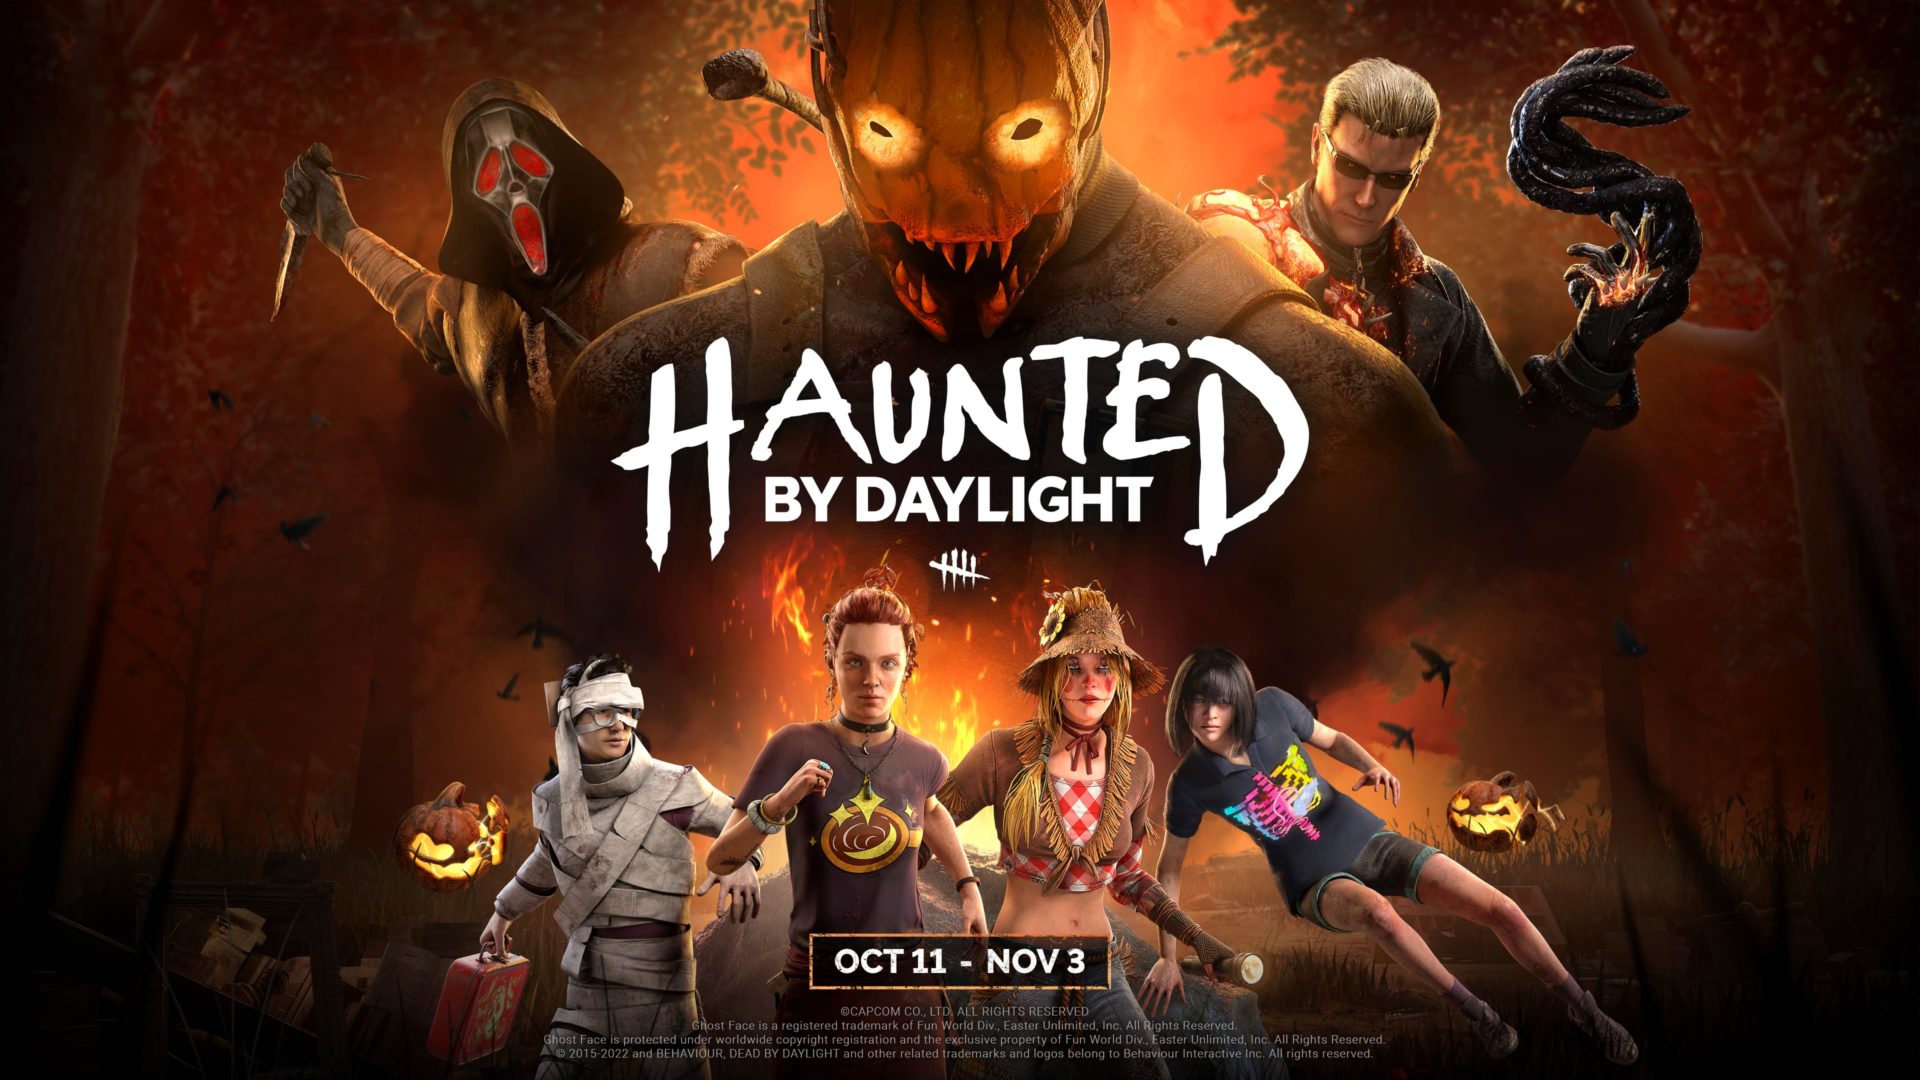 Dead by Daylight Halloween Festivities "Haunted by Daylight" Kicks Off